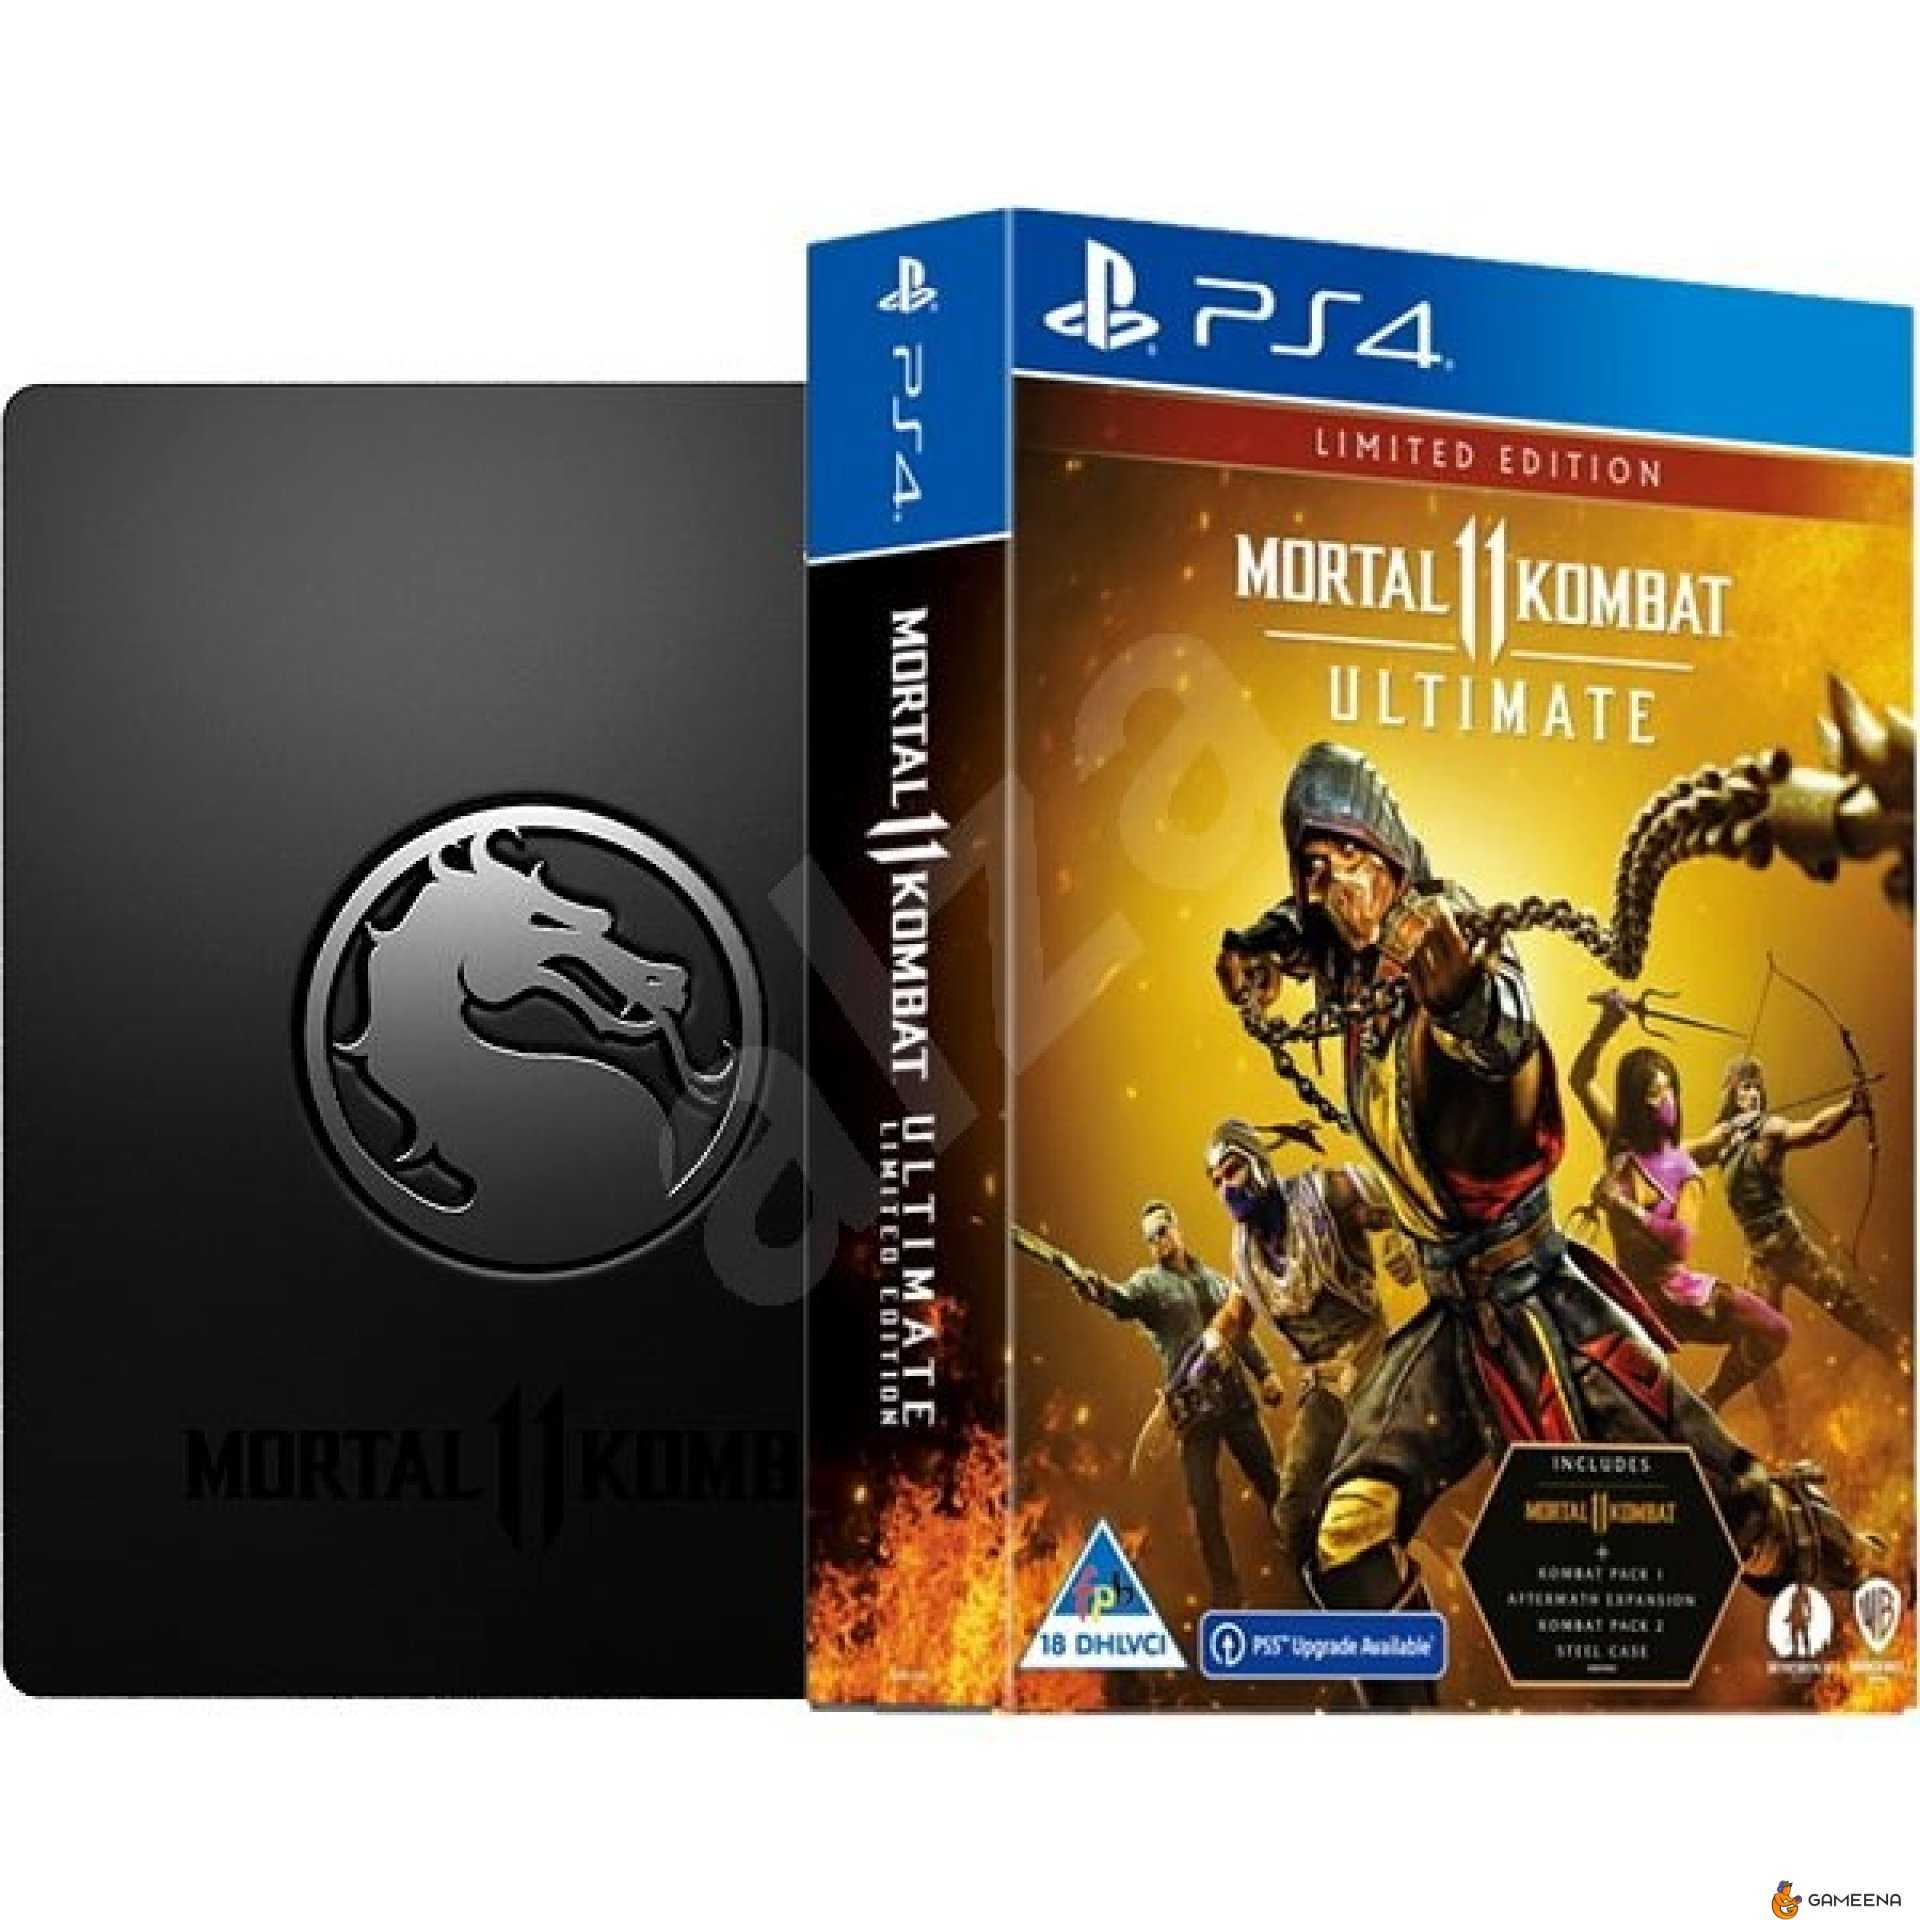 Ps4 ultimate edition. Mortal Kombat 11 Ultimate Steelbook Edition. Mortal Kombat 11 ps4 диск. Ultimate-издание mk11. MK 11 Ultimate ps4.